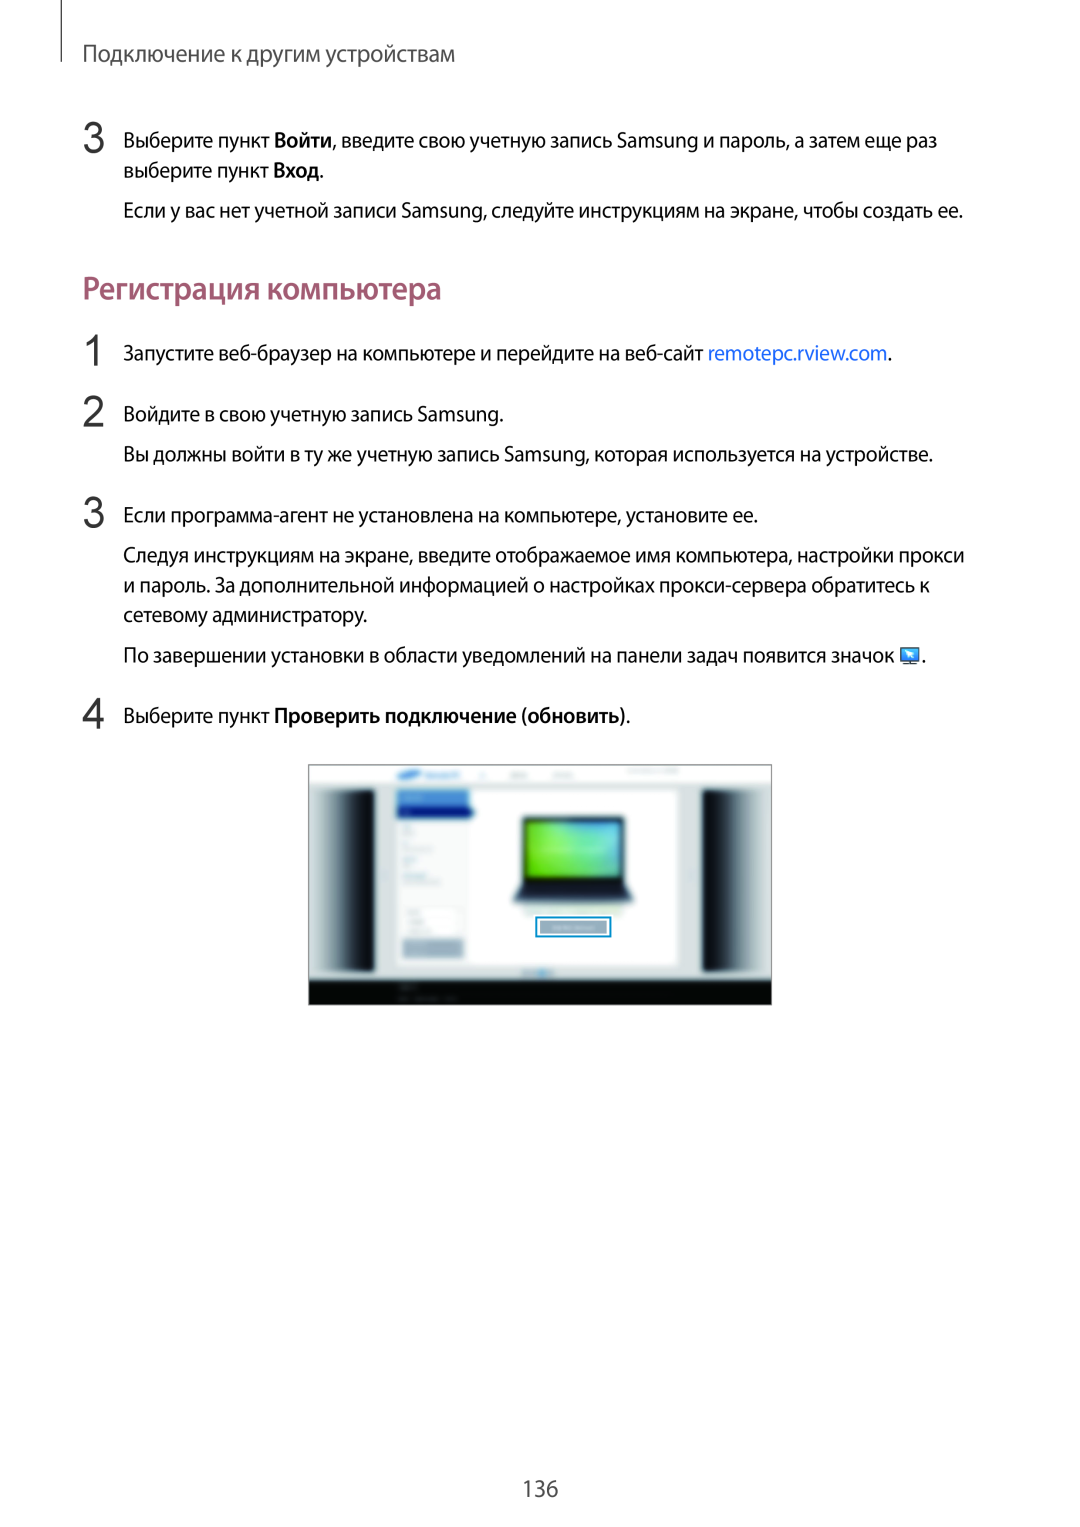 Samsung SM-T800NTSASEB, SM-T800NZWASEB manual Регистрация компьютера, Выберите пункт Проверить подключение обновить 